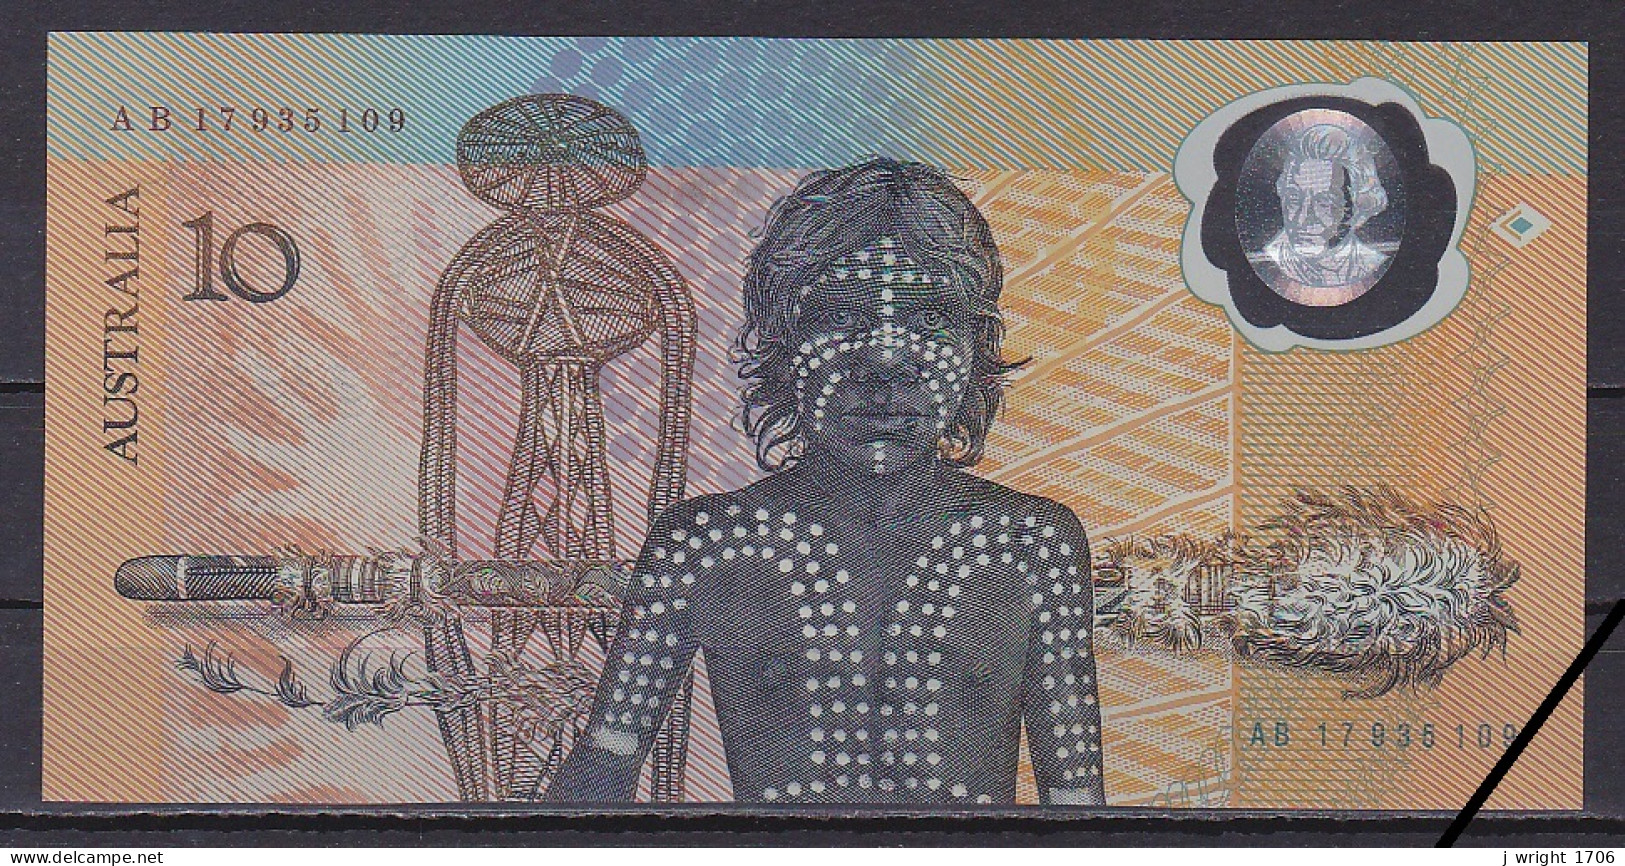 Australia, 10 Dollars, 1988/Prefix AB, Grade A-UNC - 1988 (10$ Kunststoffgeldscheine)